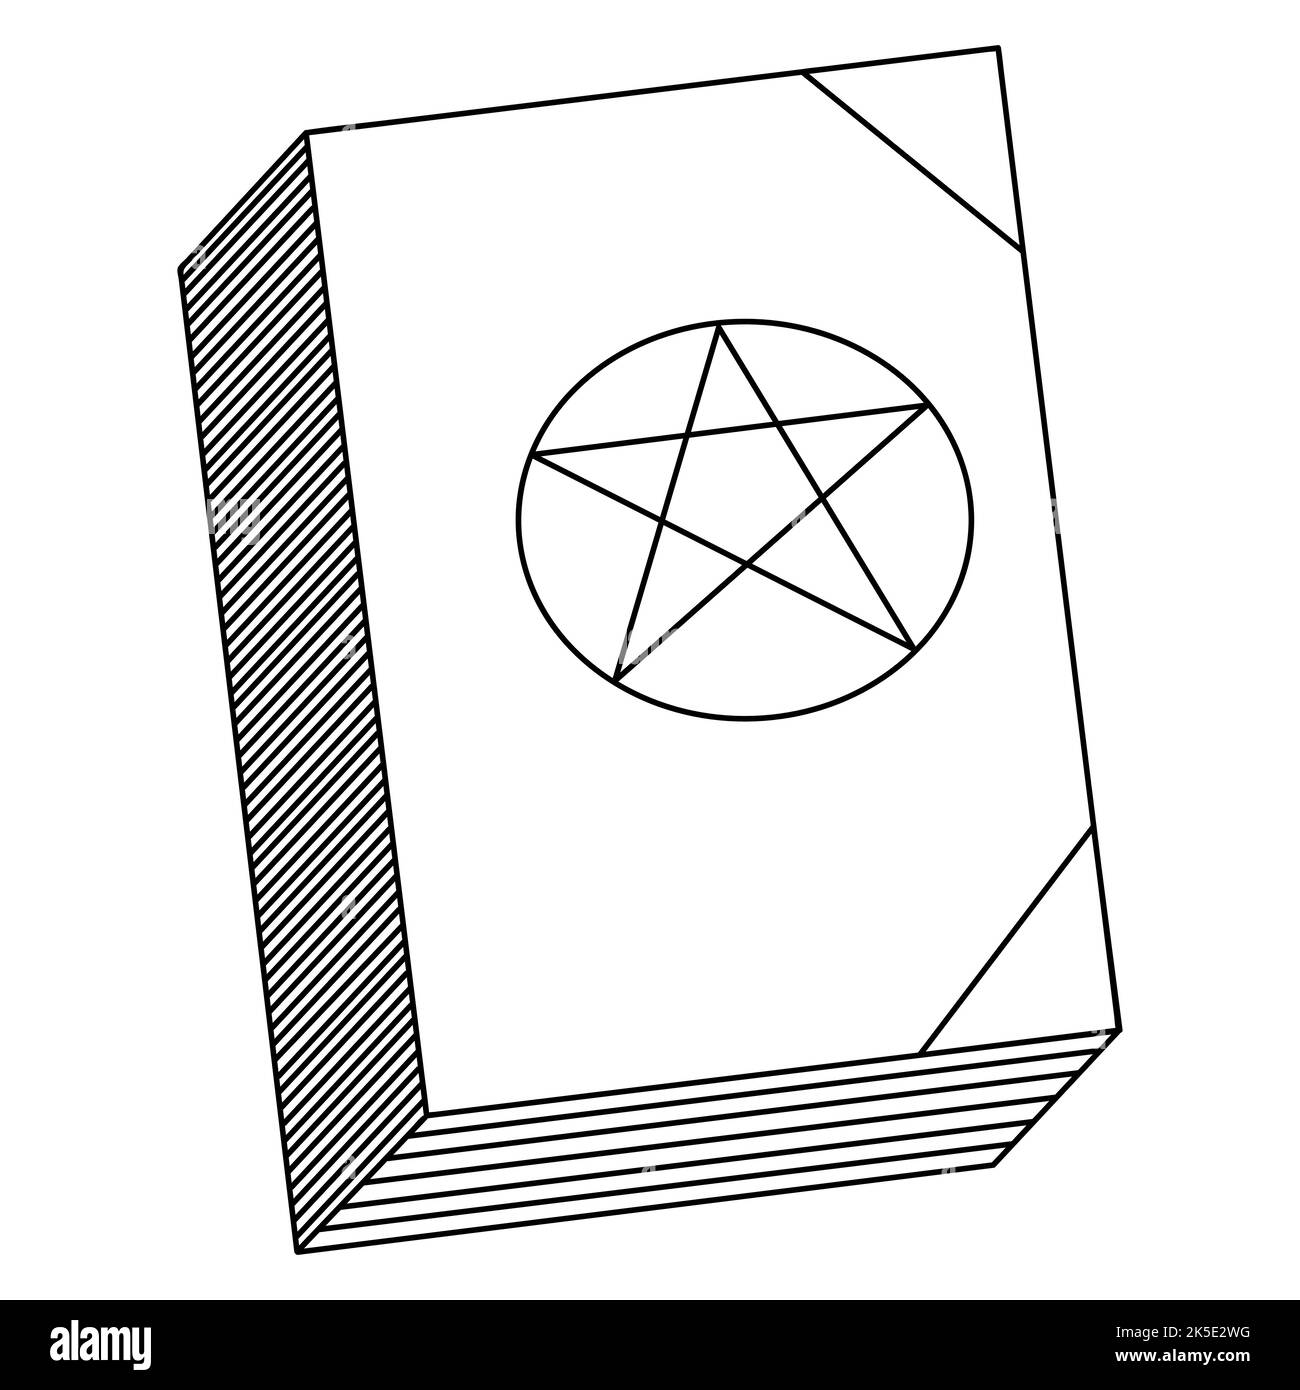 Ein Buch mit Zaubersprüchen. Auf dem Cover ist ein Pentagramm in Sternform. Vektorgrafik. Umriss auf einem isolierten weißen Hintergrund. Doodle-Stil. Stock Vektor